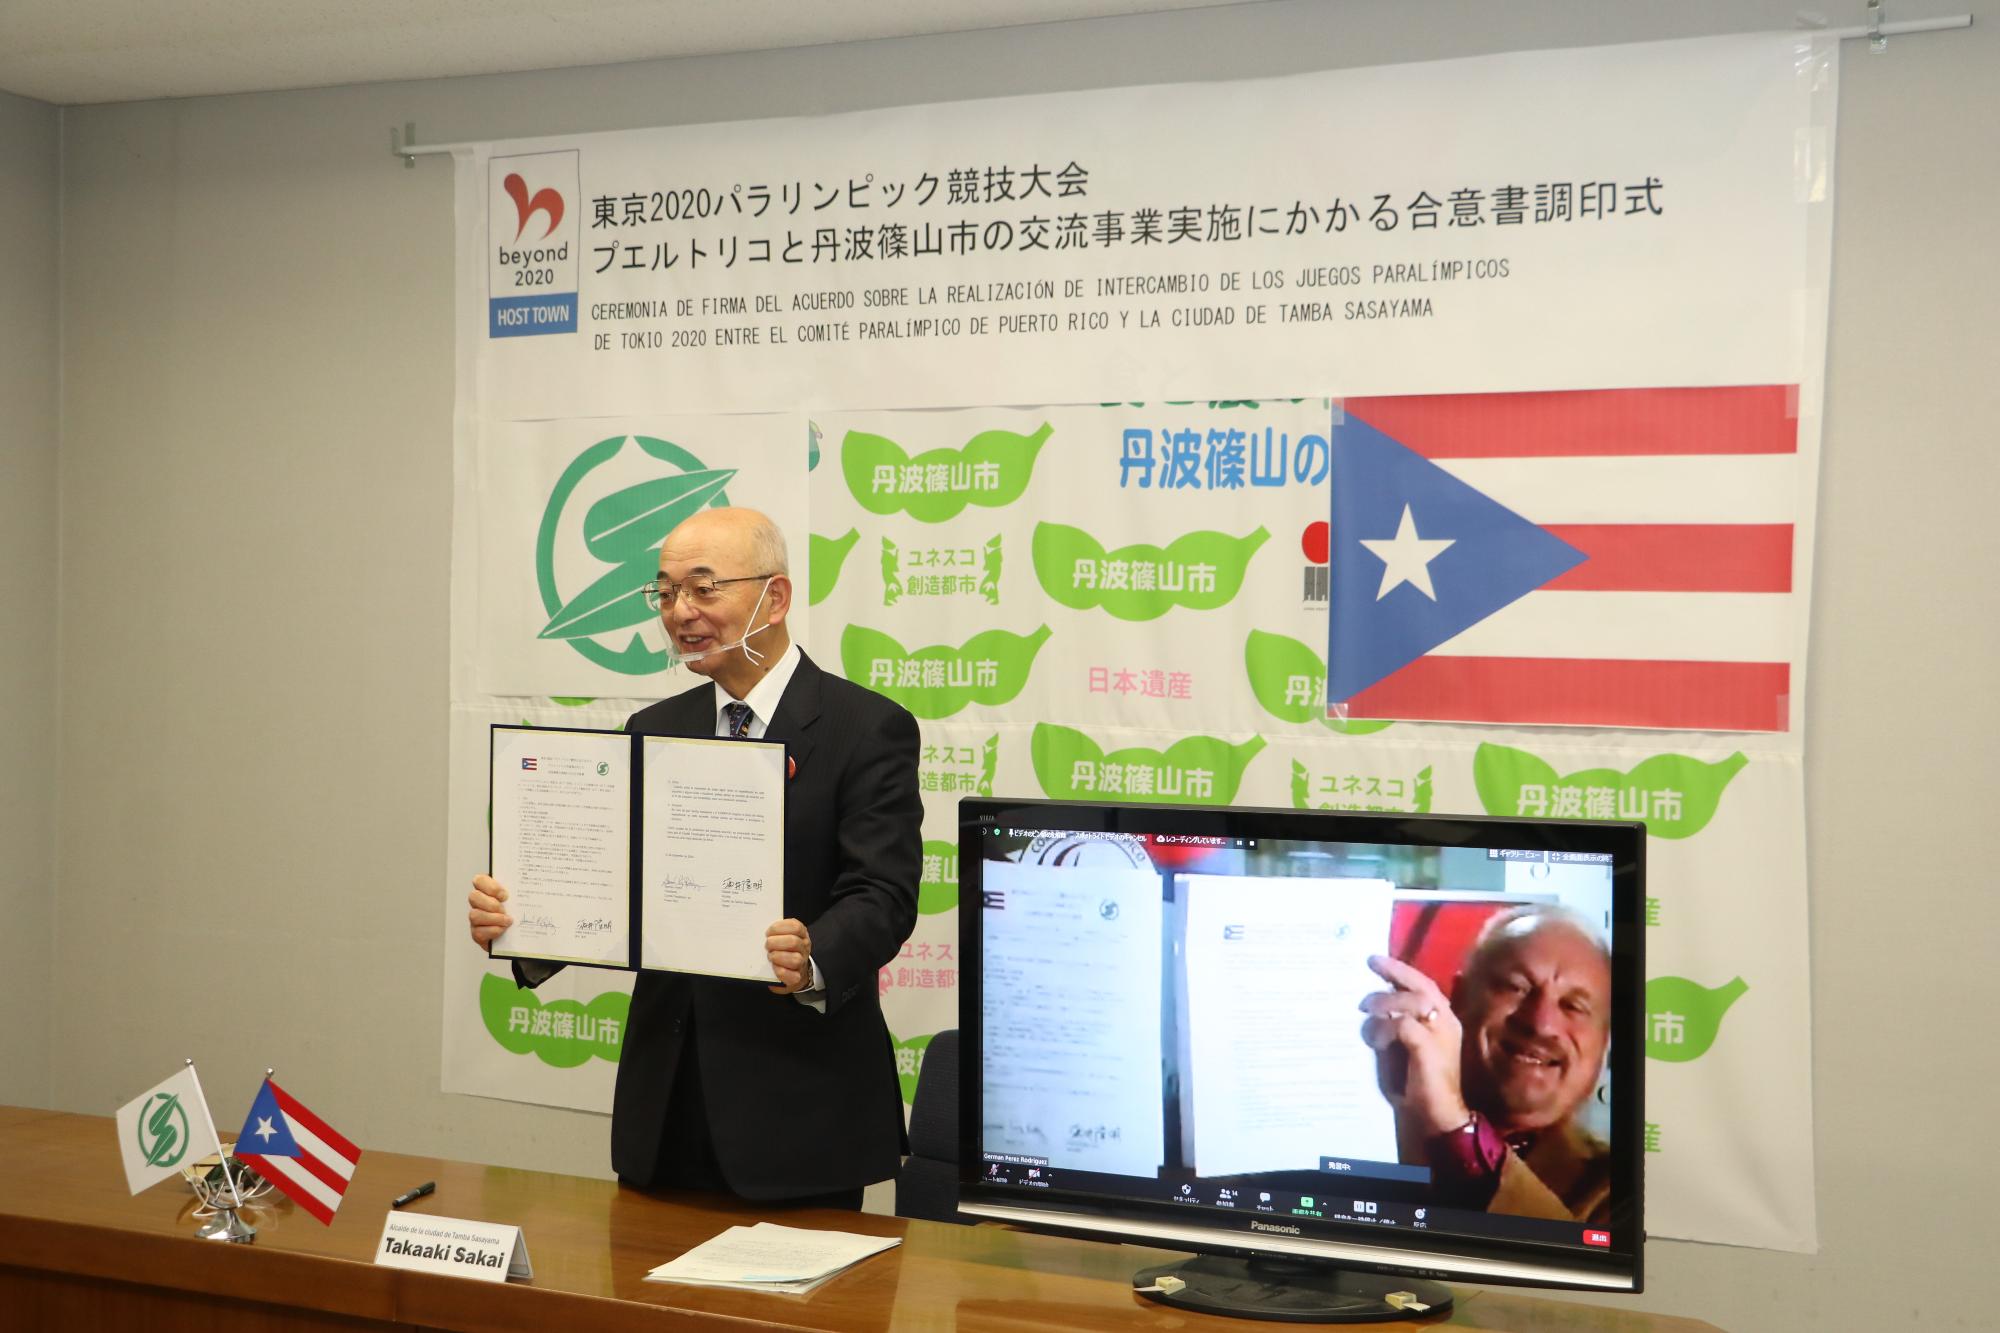 オンラインでの調印式。酒井市長と、プエルトリコの方が画面越しに調印書を見せ合っている